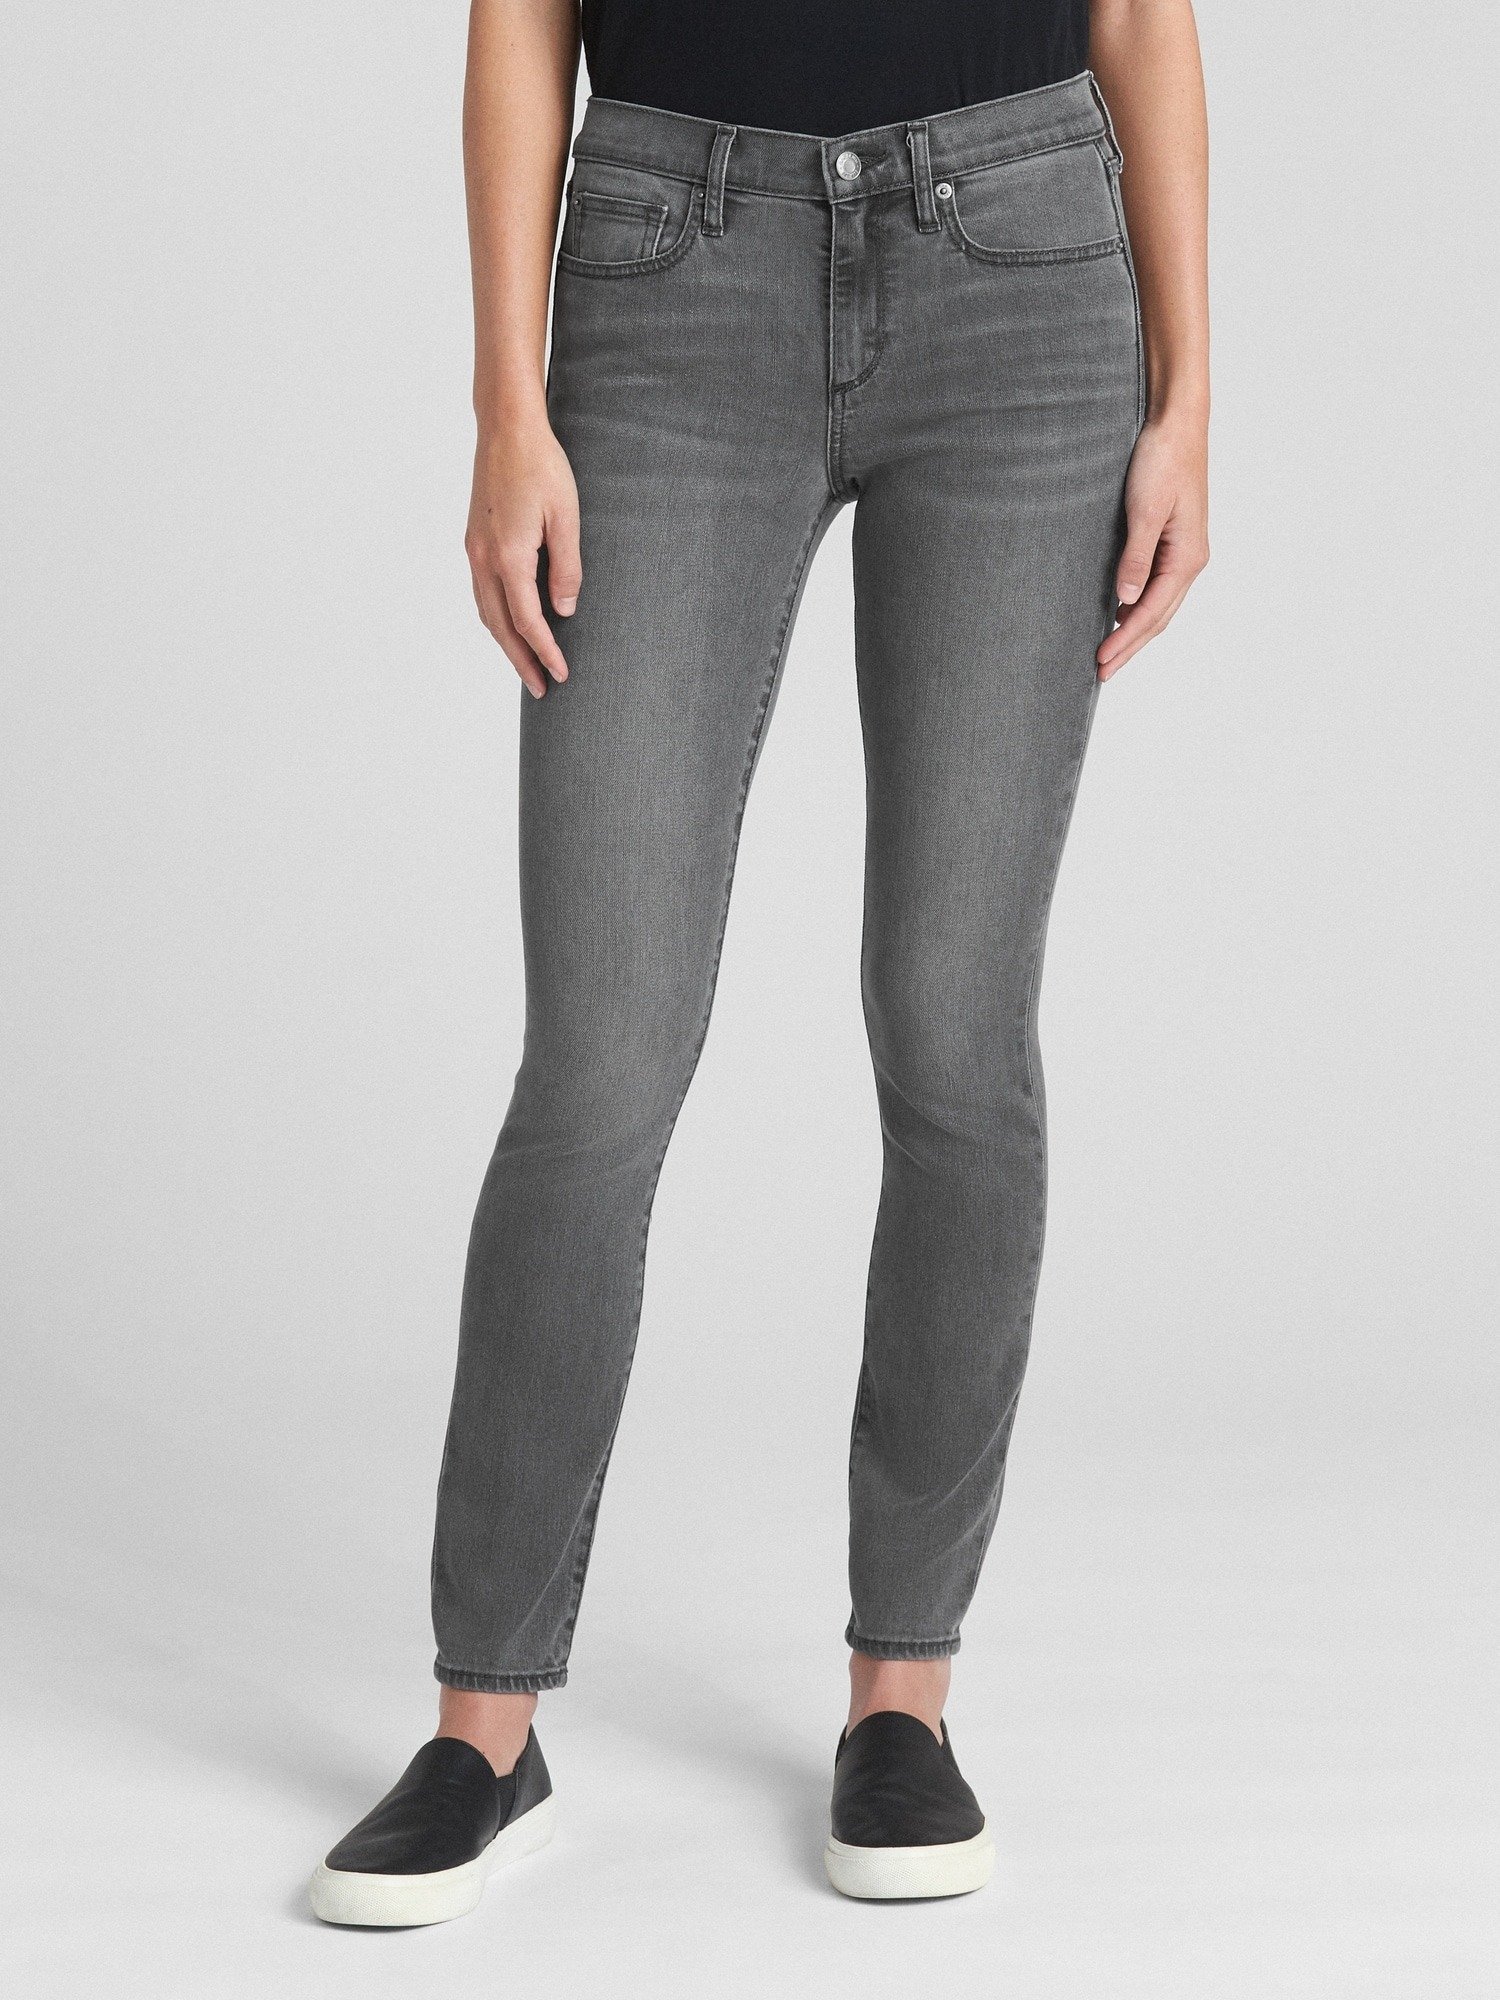 Soft Wear Orta Belli True Skinny Jean Pantolon product image